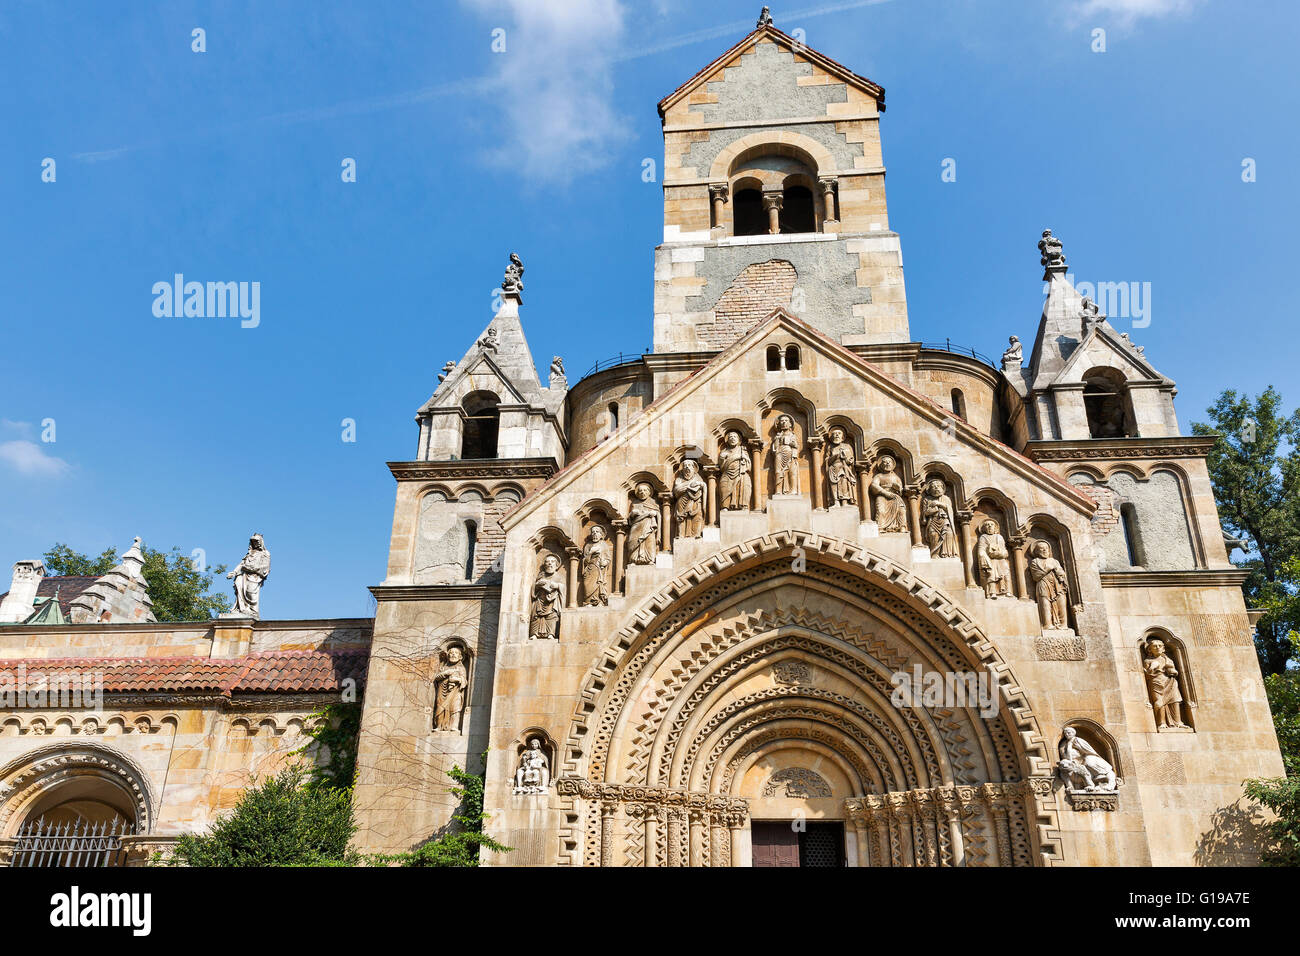 La chapelle de Jak église gothique. Le château de Vajdahunyad, Budapest. Belle église médiévale avec grand portail. Banque D'Images